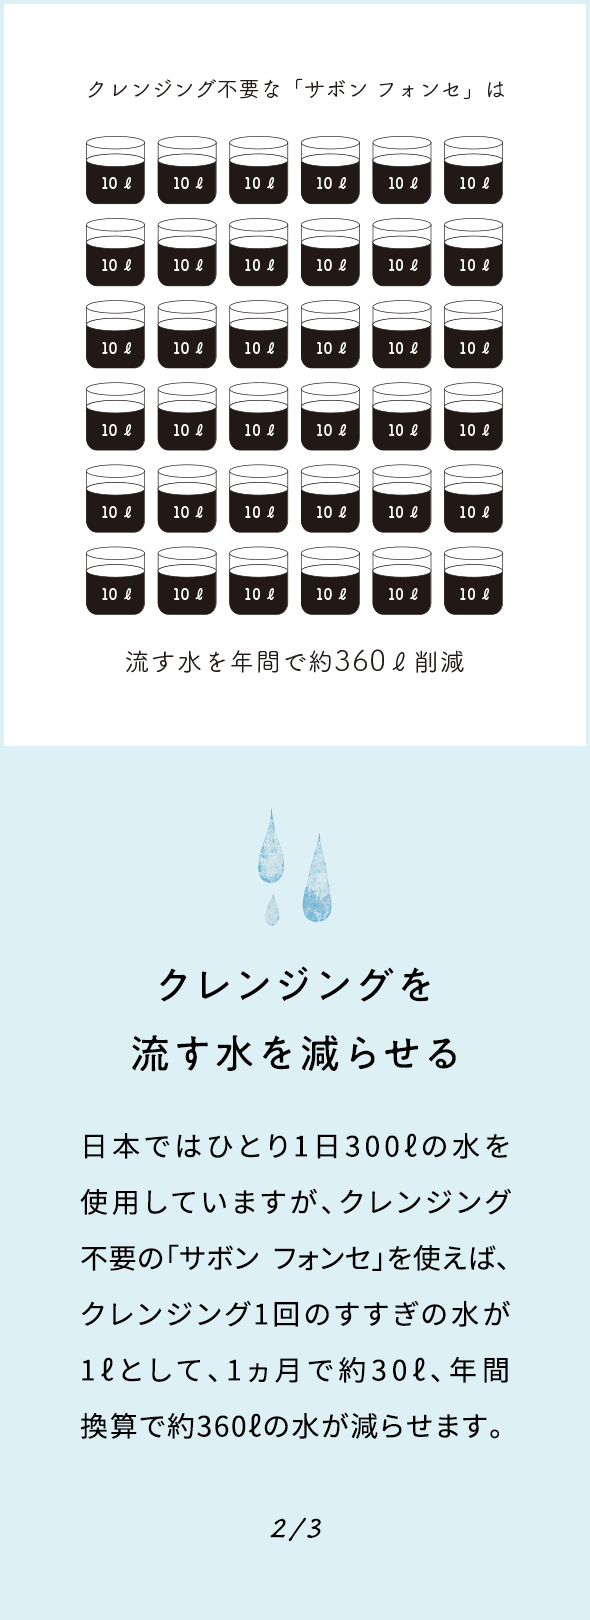 クレンジングを流す水を減らせる 日本ではひとり1日300ℓの水を使用していますが、クレンジング不要の「サボン フォンセ」を使えば、クレンジング1回のすすぎの水が1ℓとして、1ヵ月で約30ℓ、年間換算で約360ℓの水が減らせます。